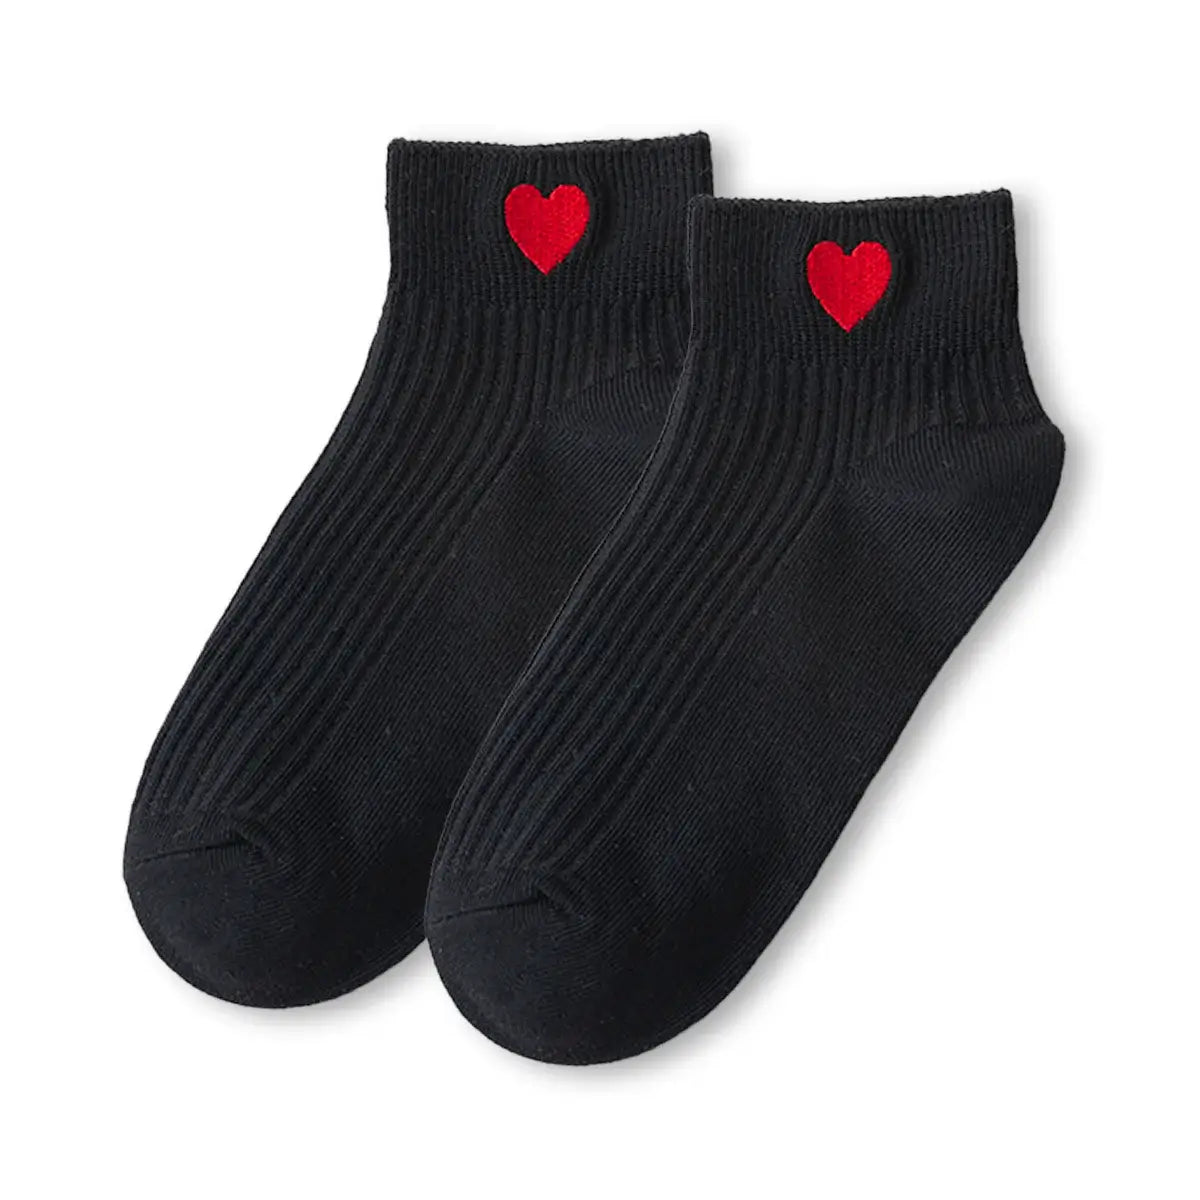 Chaussettes noires en coton à motif cœur rouge pour femme | Chaussettes élégantes et confortables | Un cadeau parfait pour les femmes | Disponibles en plusieurs couleurs.